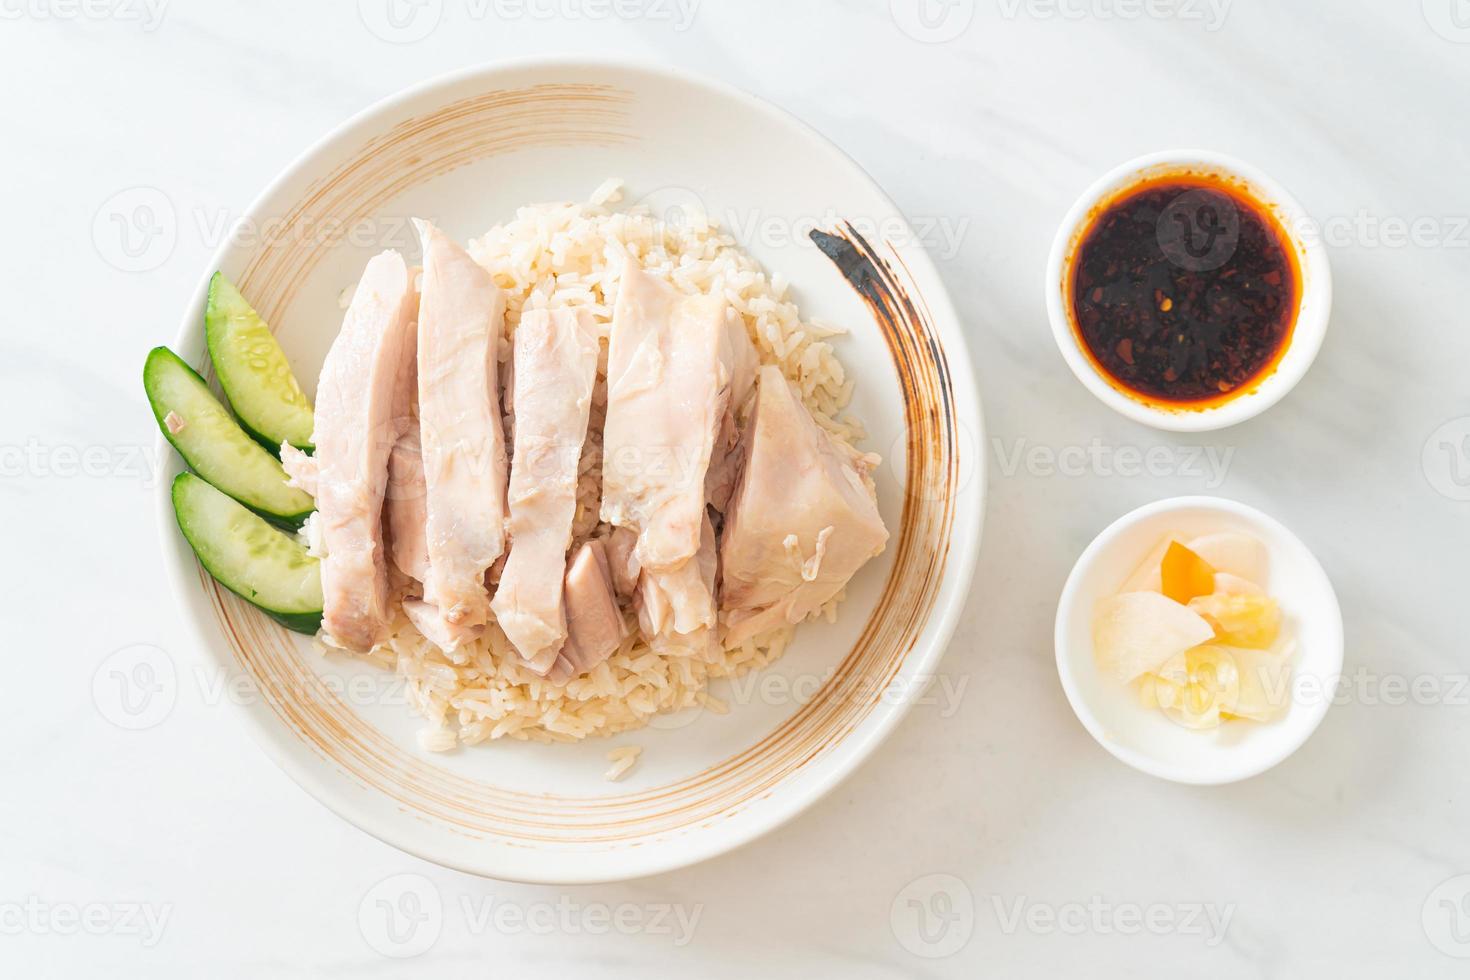 riso al pollo hainanese o riso al vapore con zuppa di pollo foto